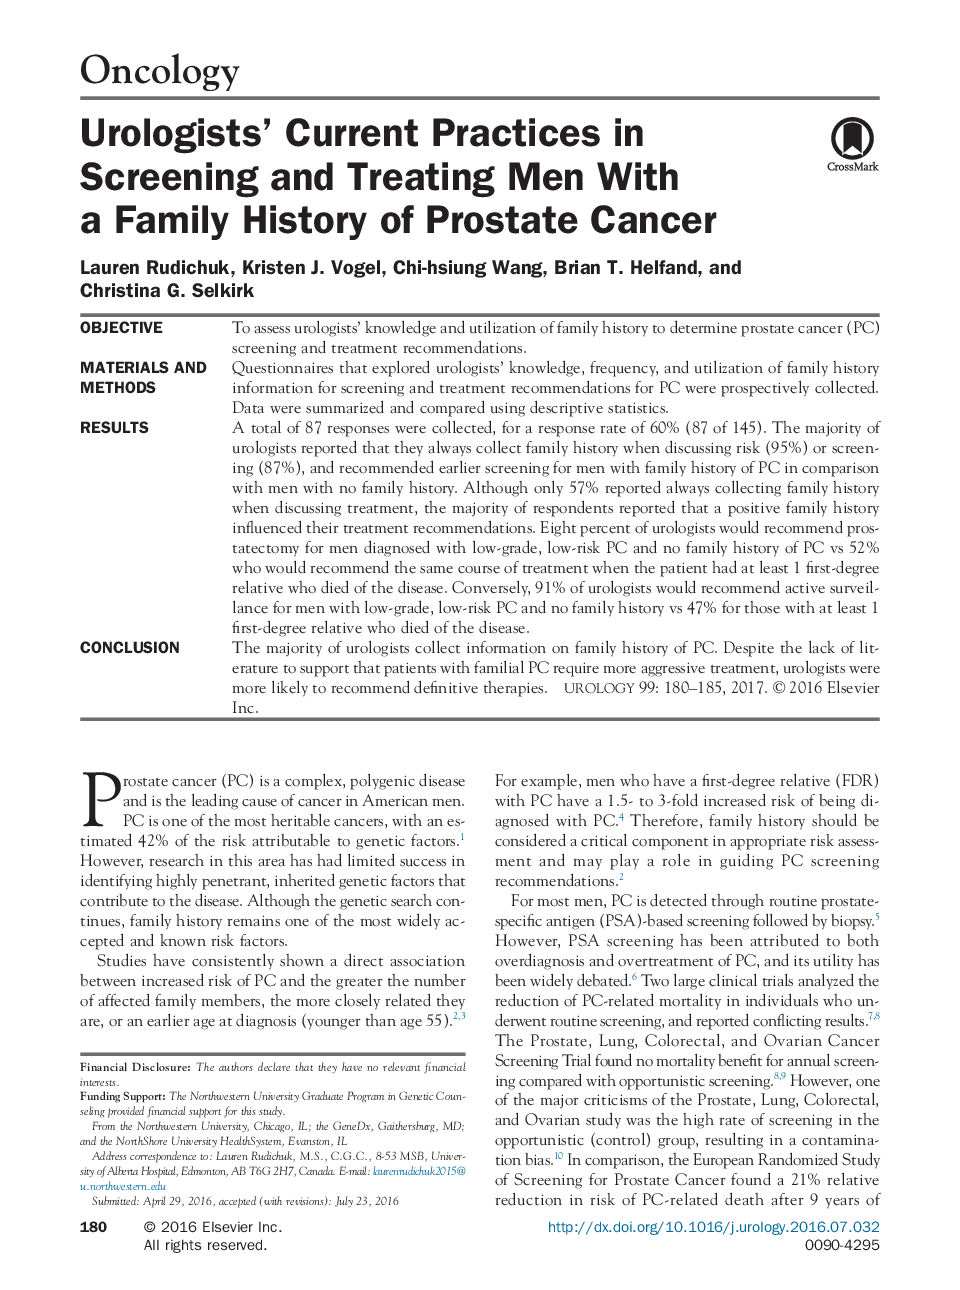 روشهای فعلی اورولوژی در نمایش و درمان مردان با سابقه خانوادگی سرطان پروستات 